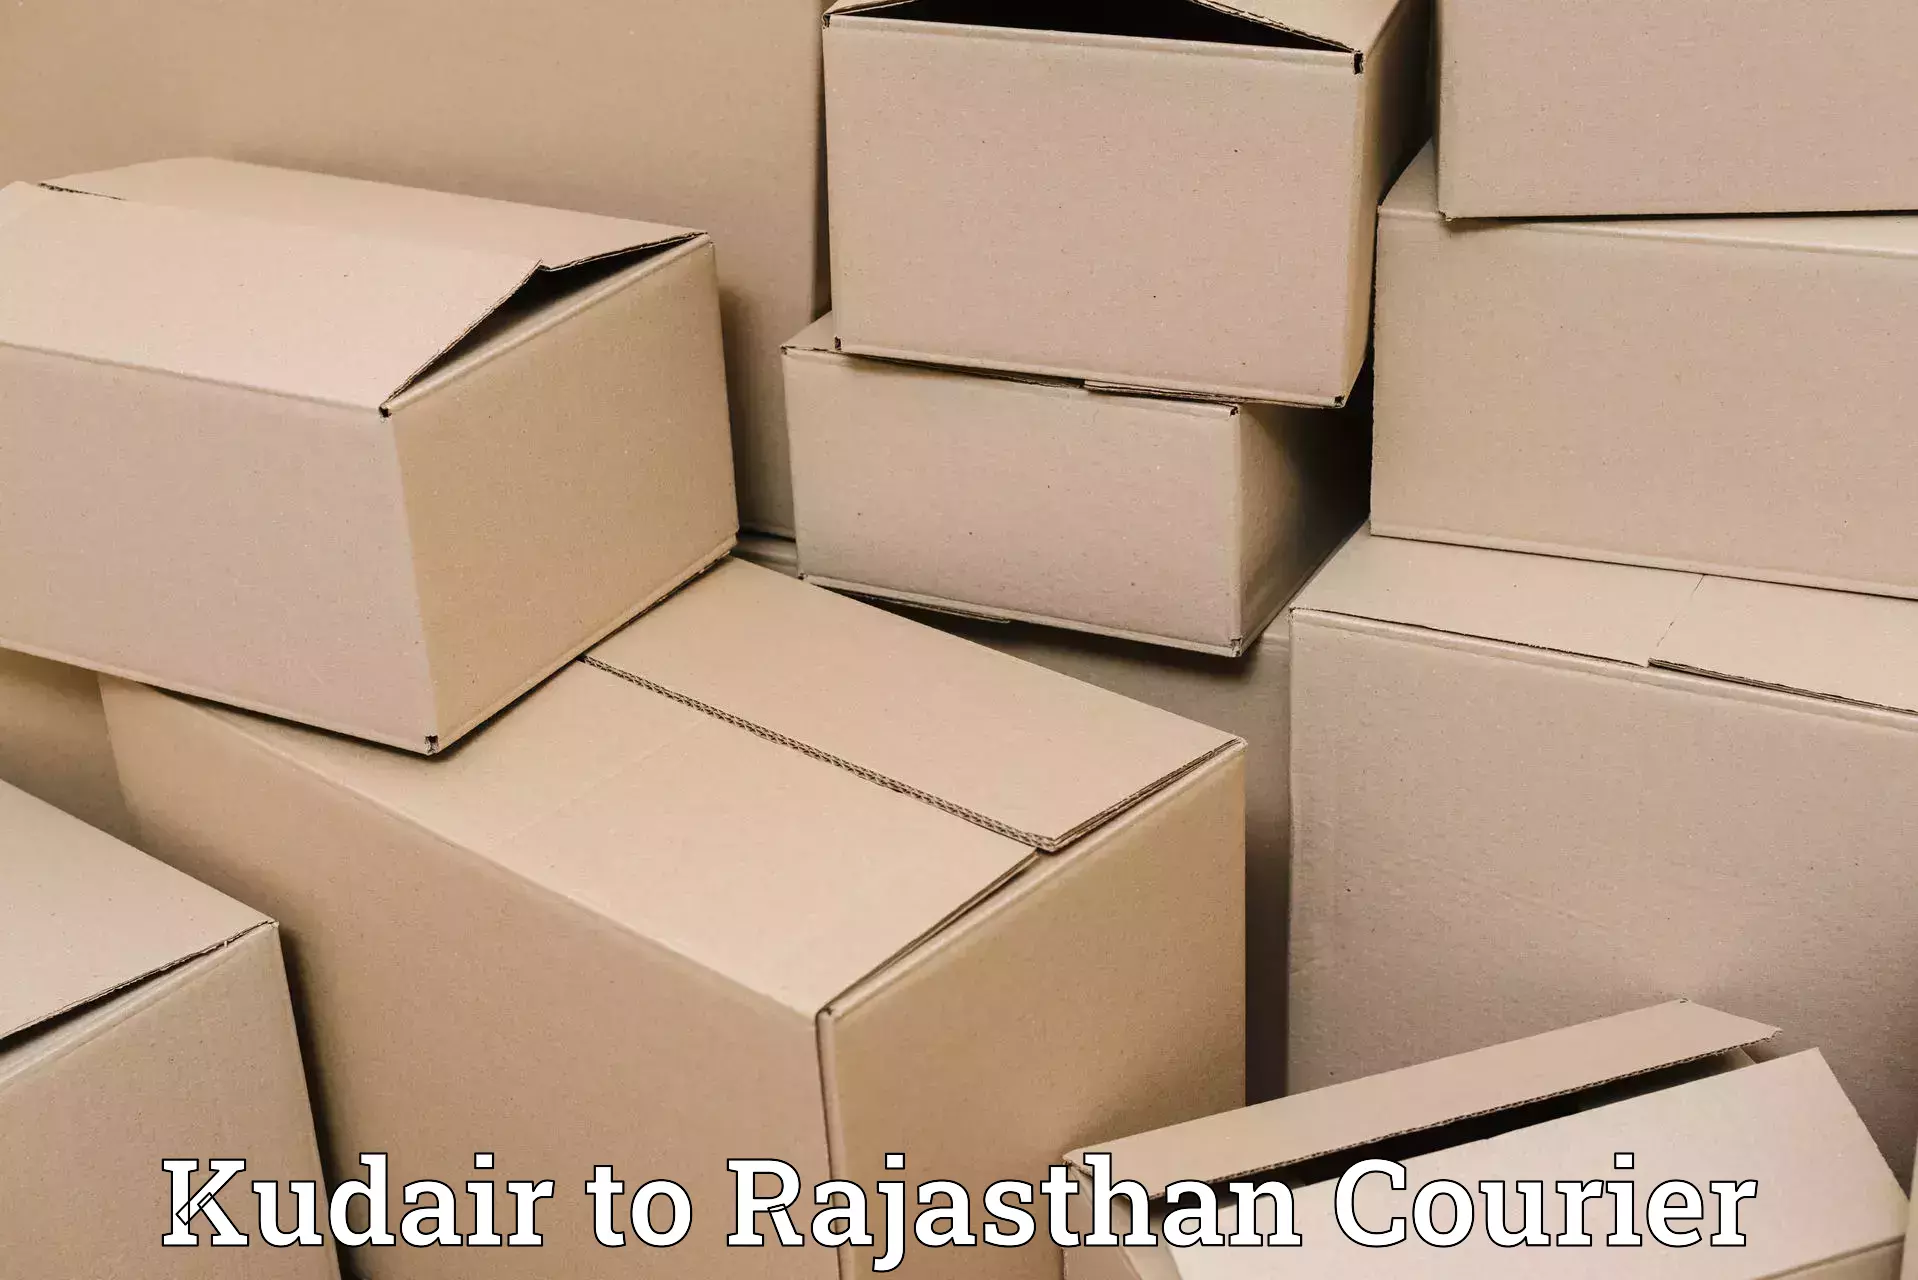 Efficient parcel tracking in Kudair to Jaisalmer